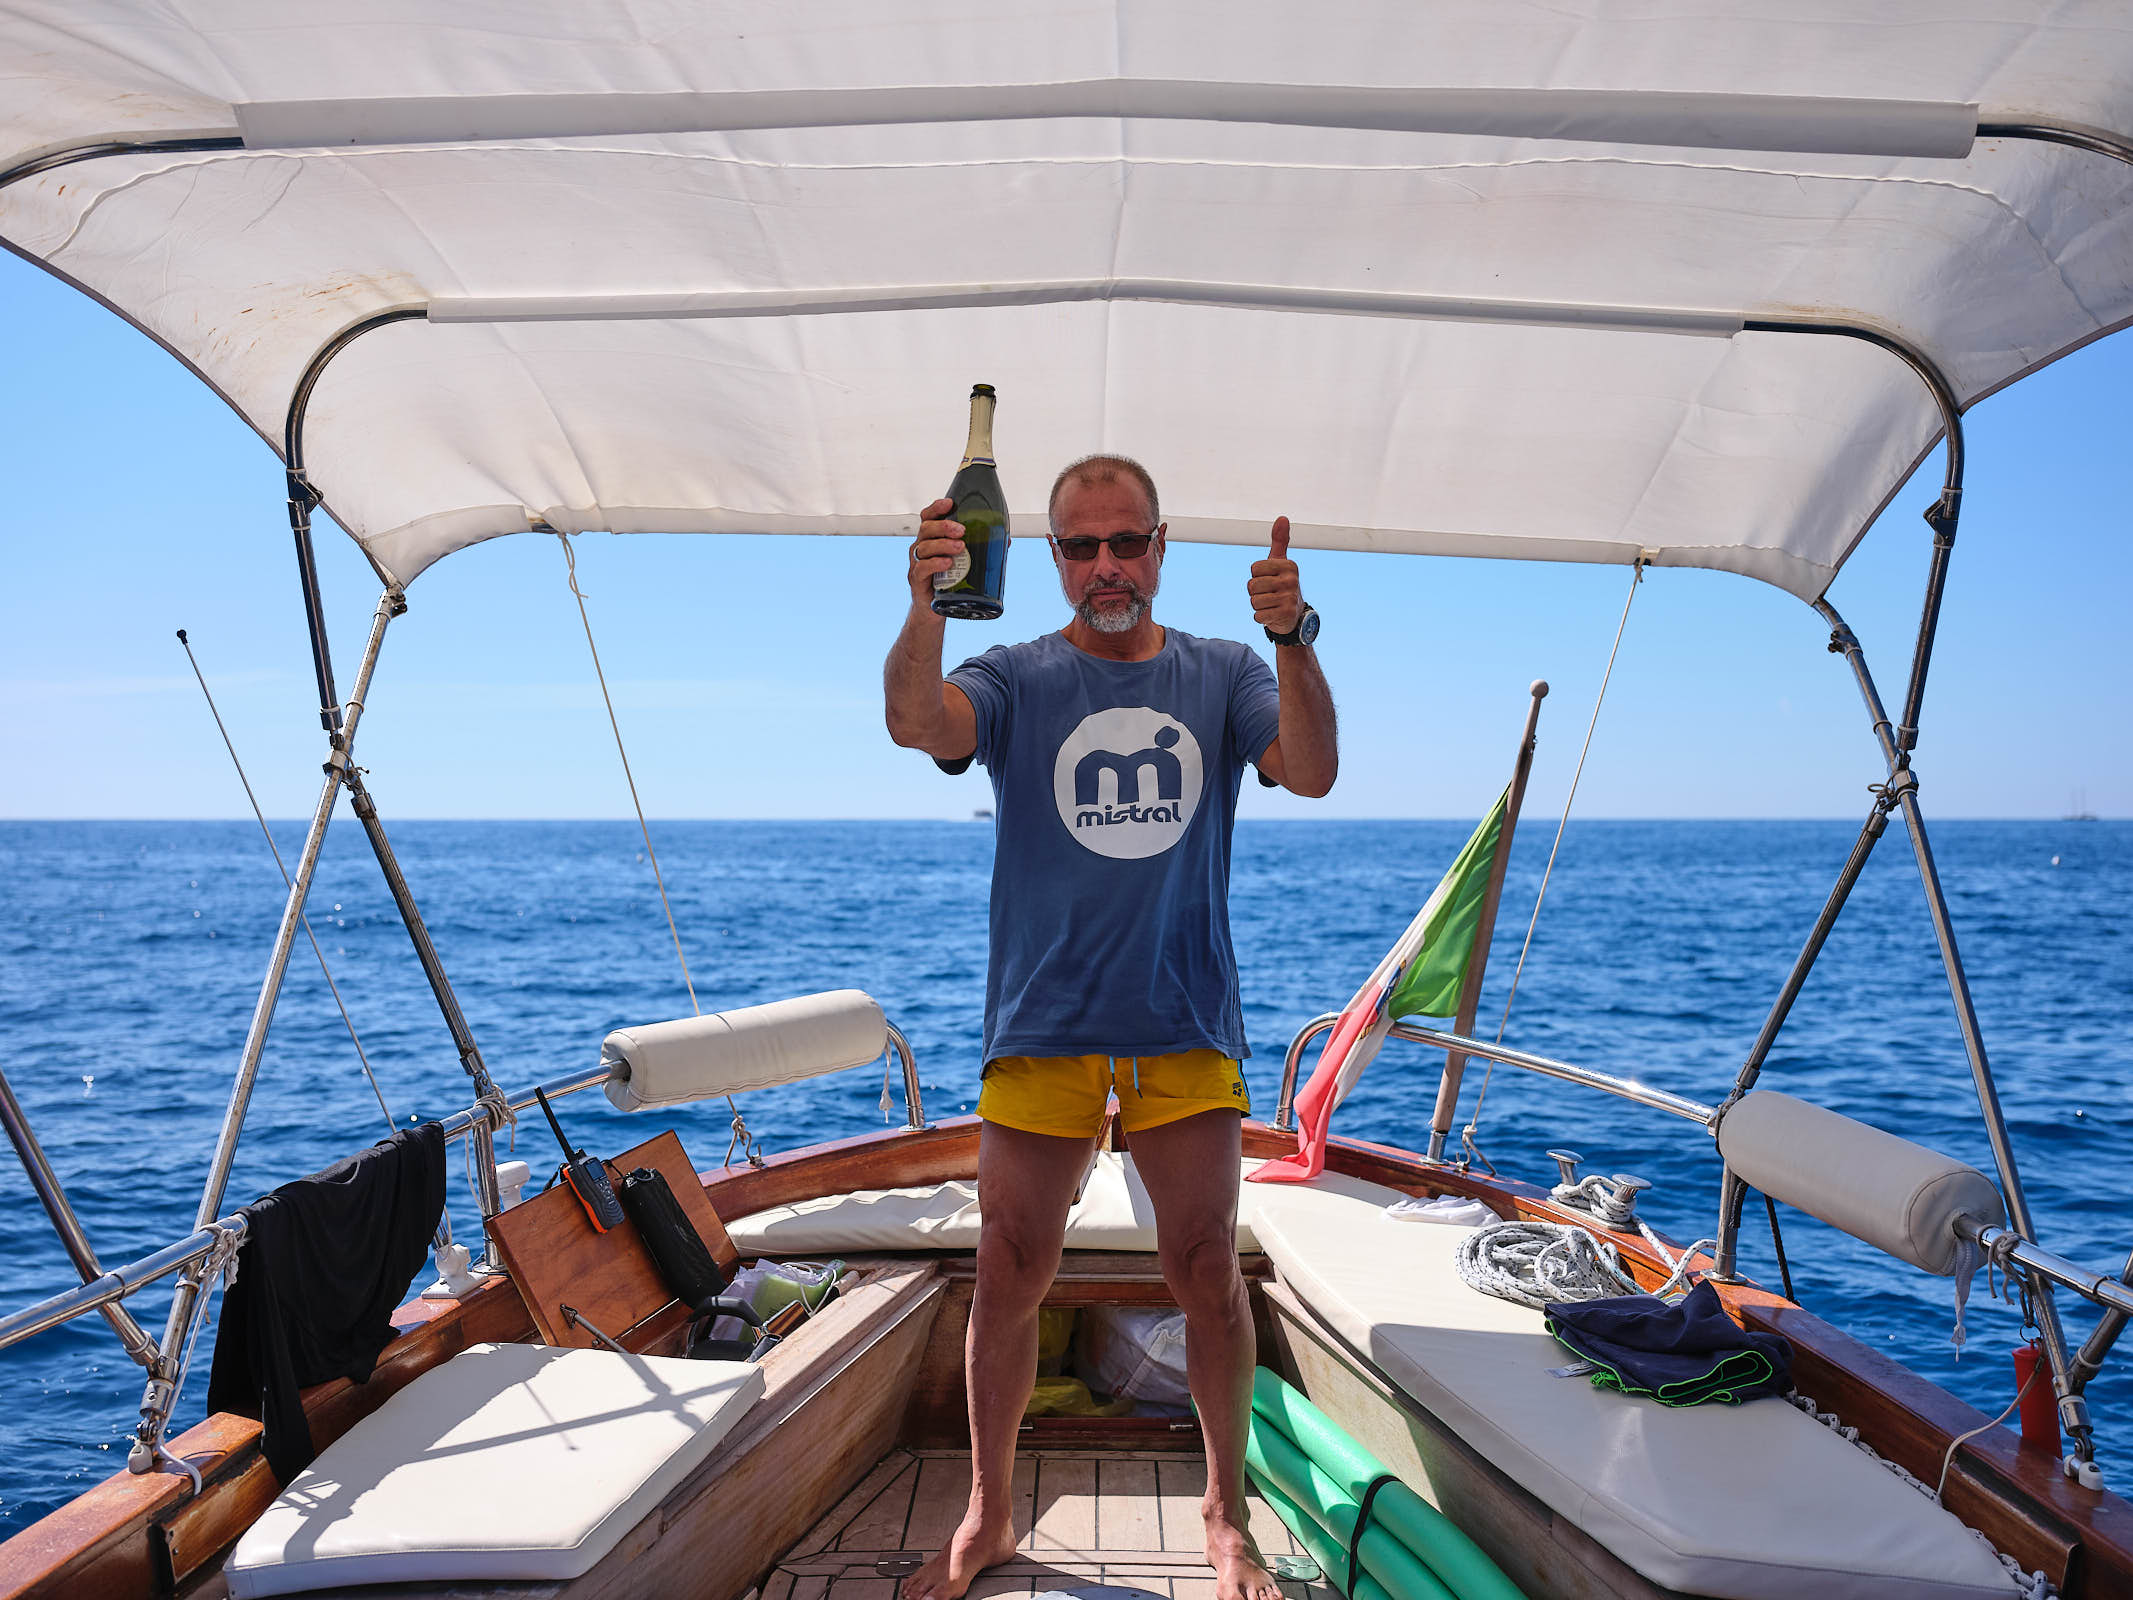 Captain Cosimo of BB Cinque Terre Boat Tours